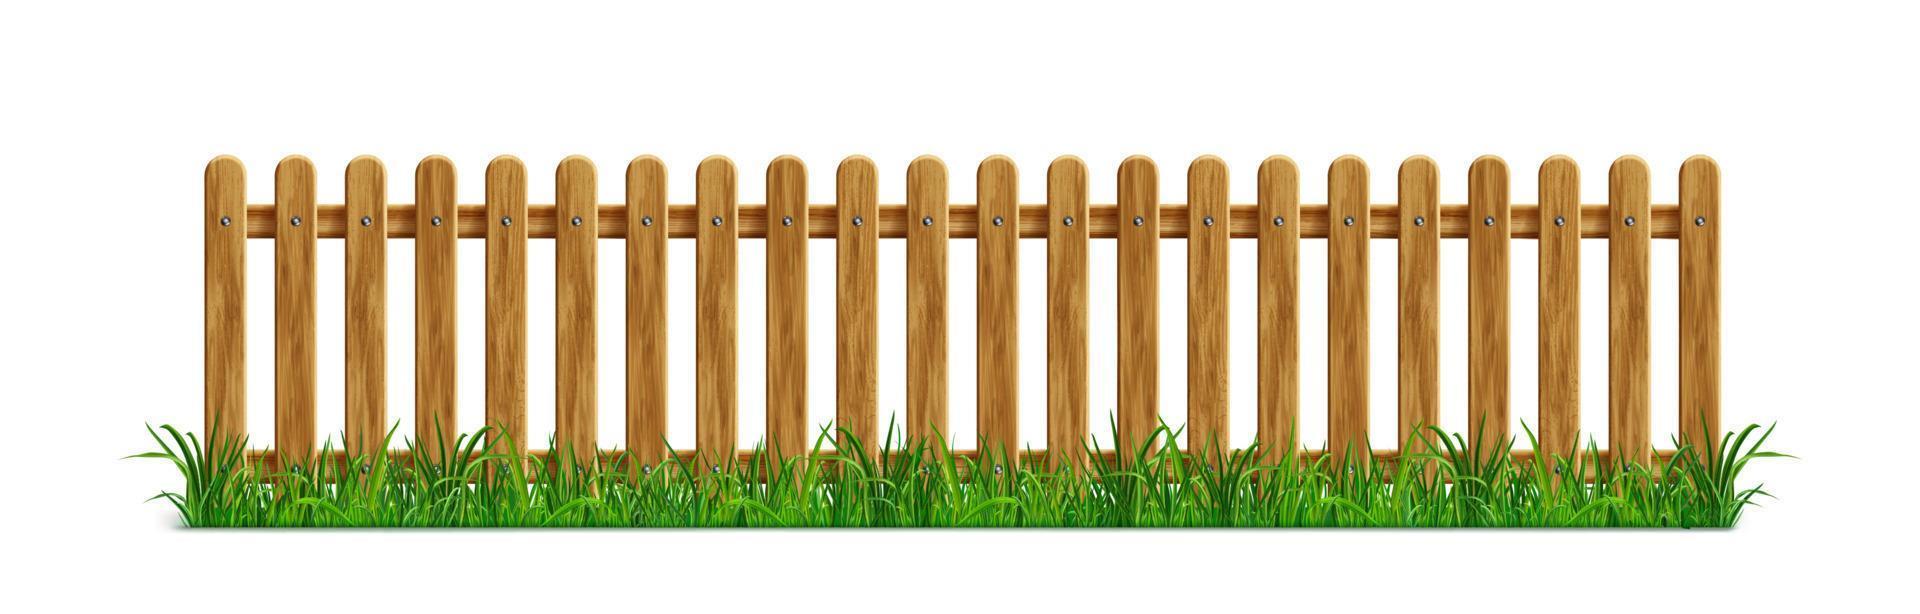 bruin houten piket hek met groen gras vector